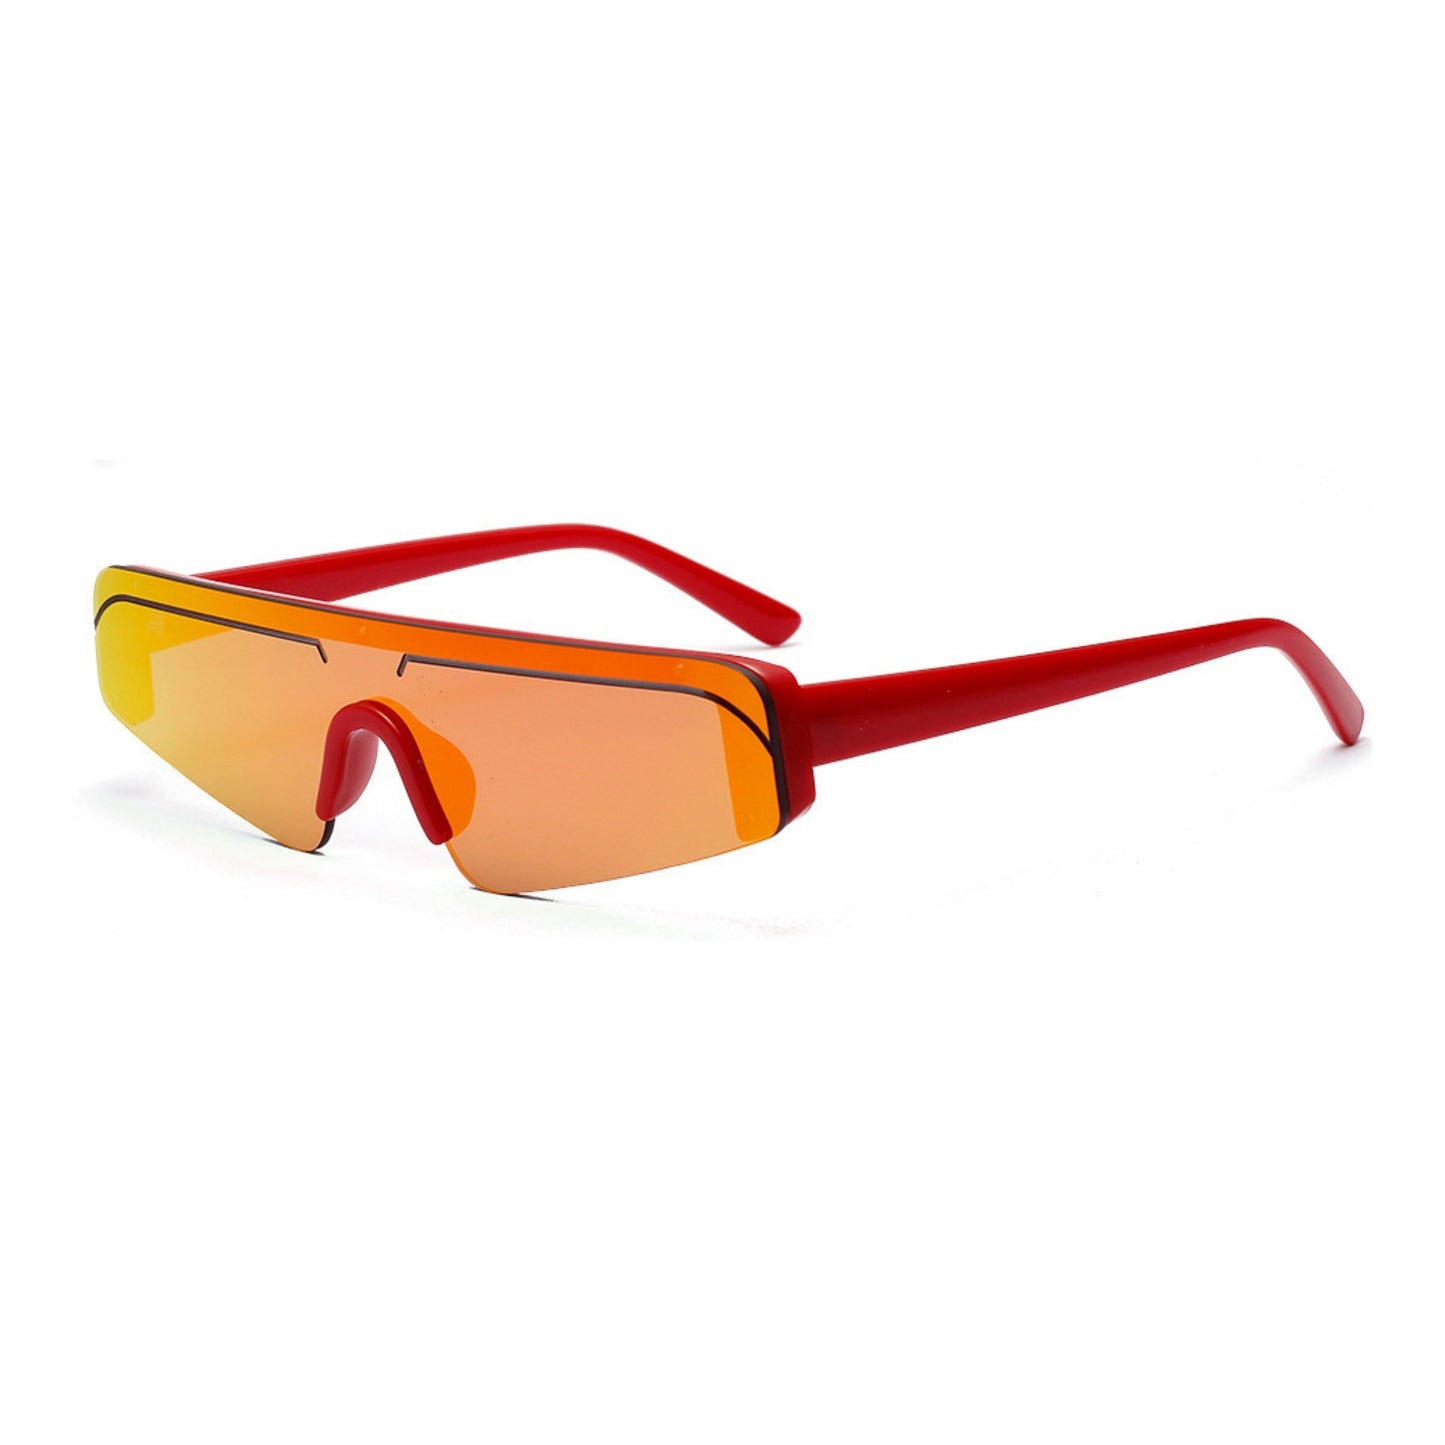 Γυαλιά ηλίου (Μάσκα) Miami της Exposure Sunglasses με προστασία UV400 με κόκκινο σκελετό και κόκκινο φακό. Πλάγια προβολή.